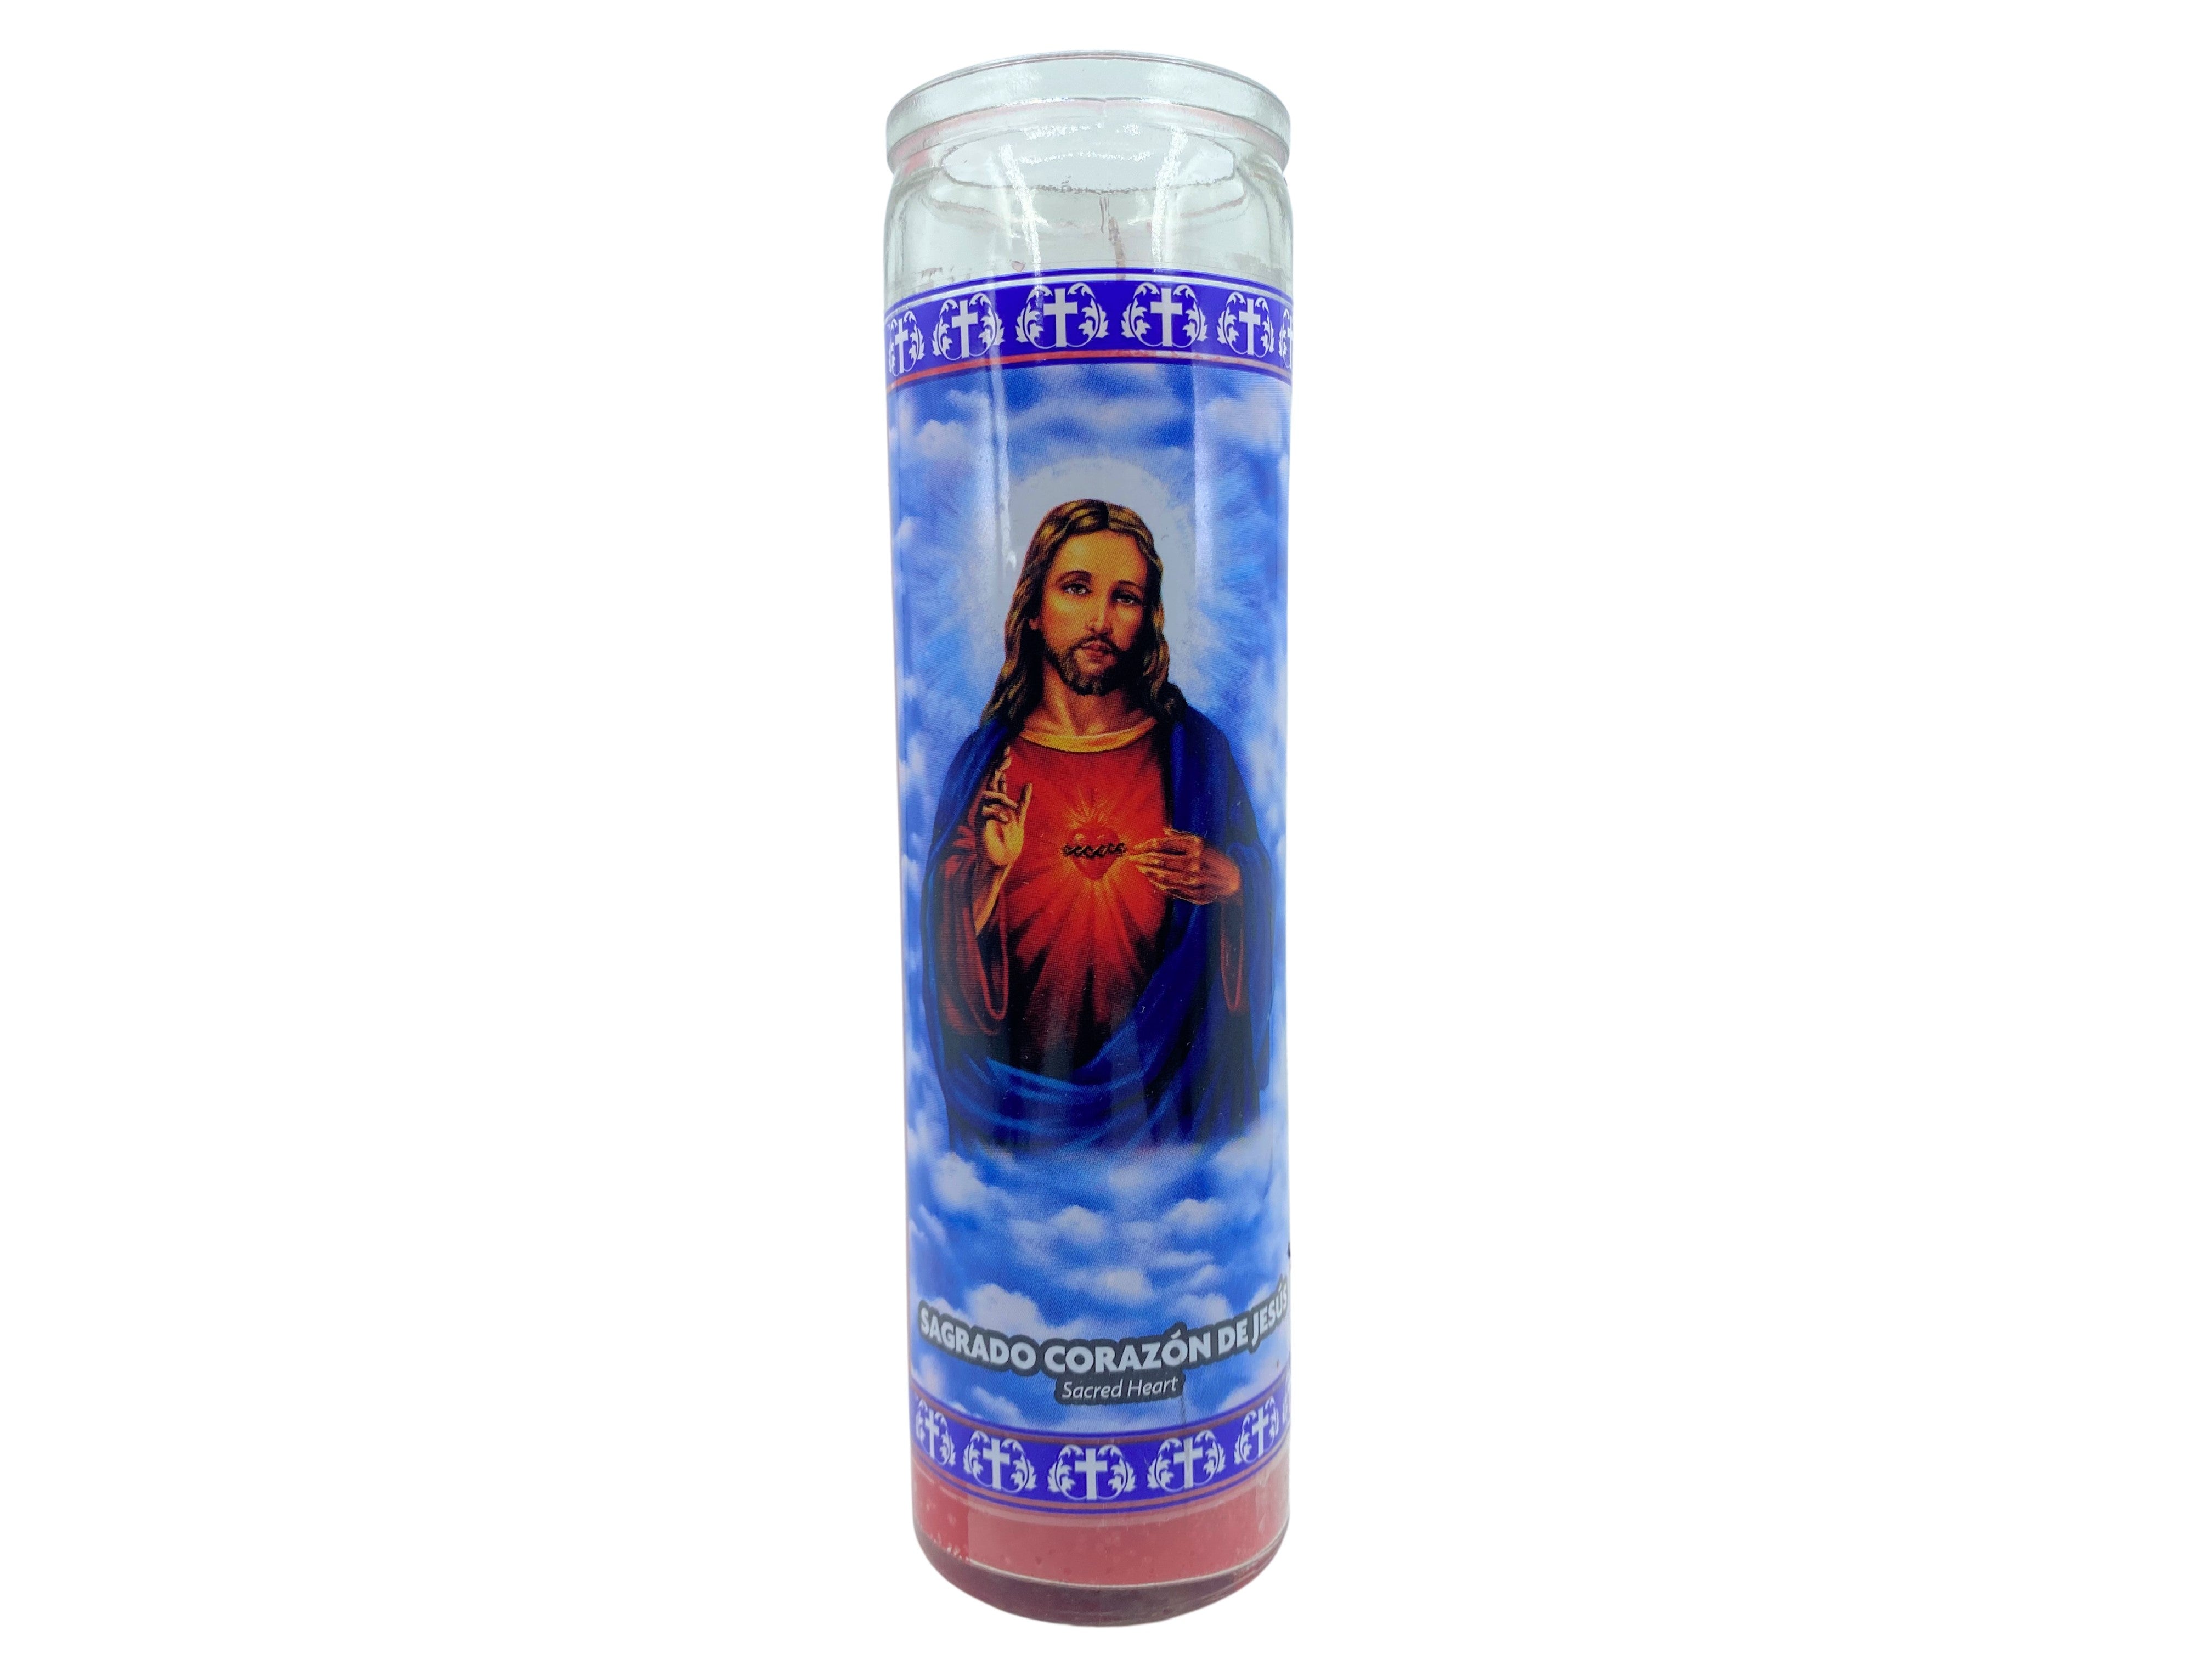 Candles of The Sacred Heart of Jesus / Velas del Sagrado Corazon de Jesus